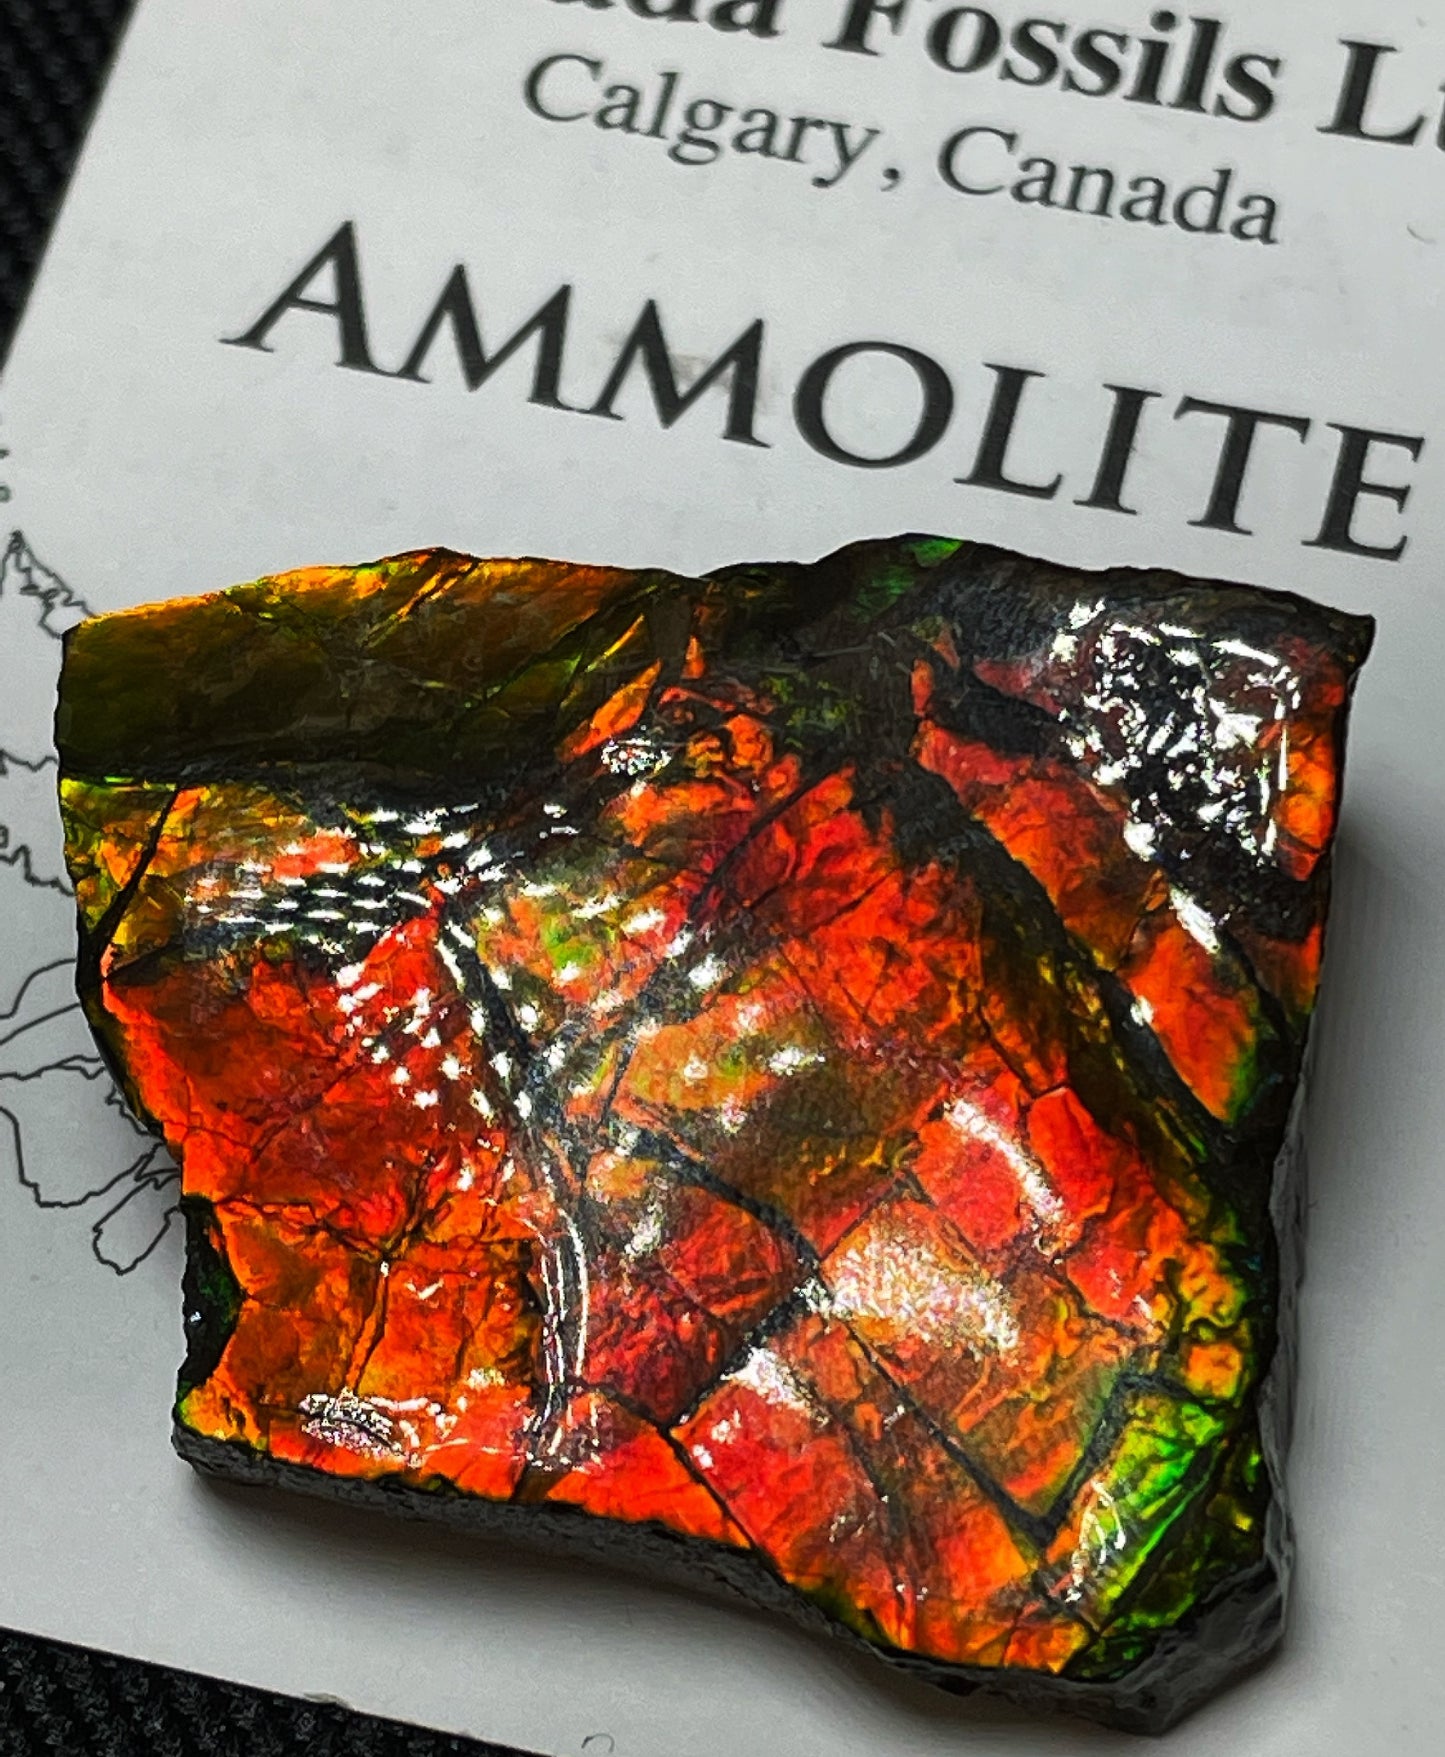 High Grade Natural Rare Ammolite Gem Quality From Calgary, Canada